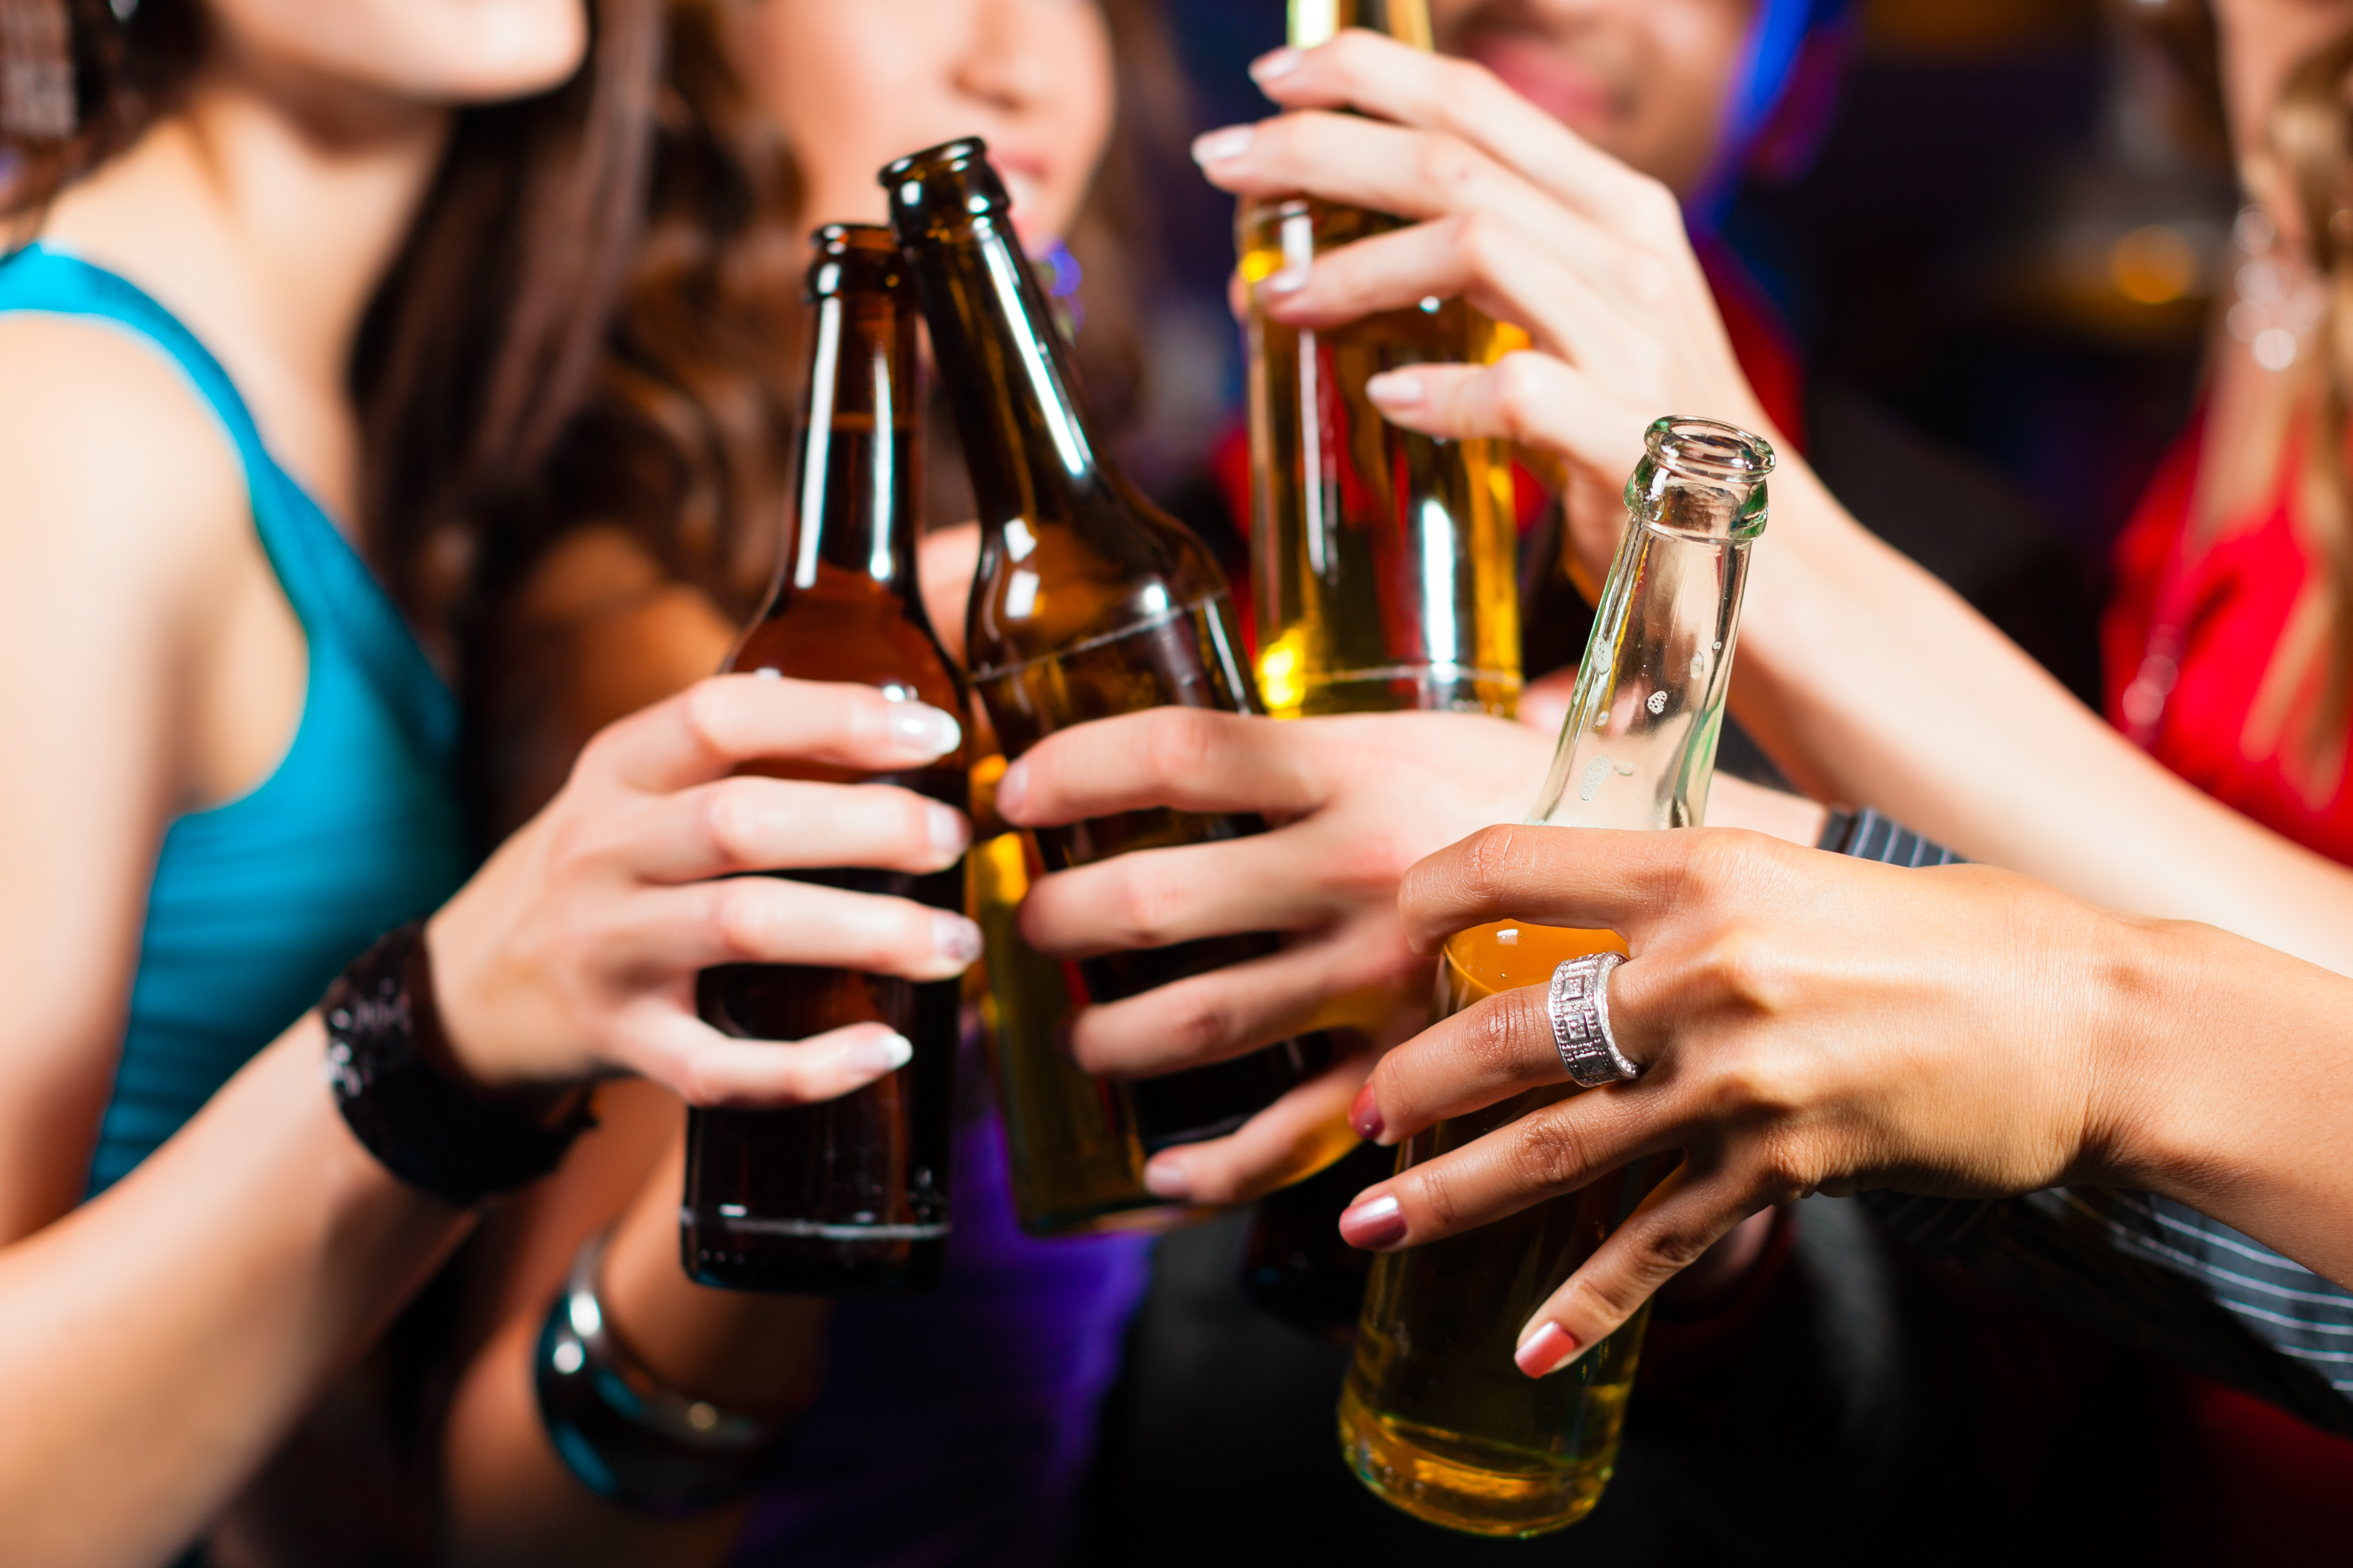 Wedge køber kerne Ny alkoholkultur: Flertal vil forbyde salg af alkohol til unge på  ungdomsuddannelser | Blå Kors Danmark